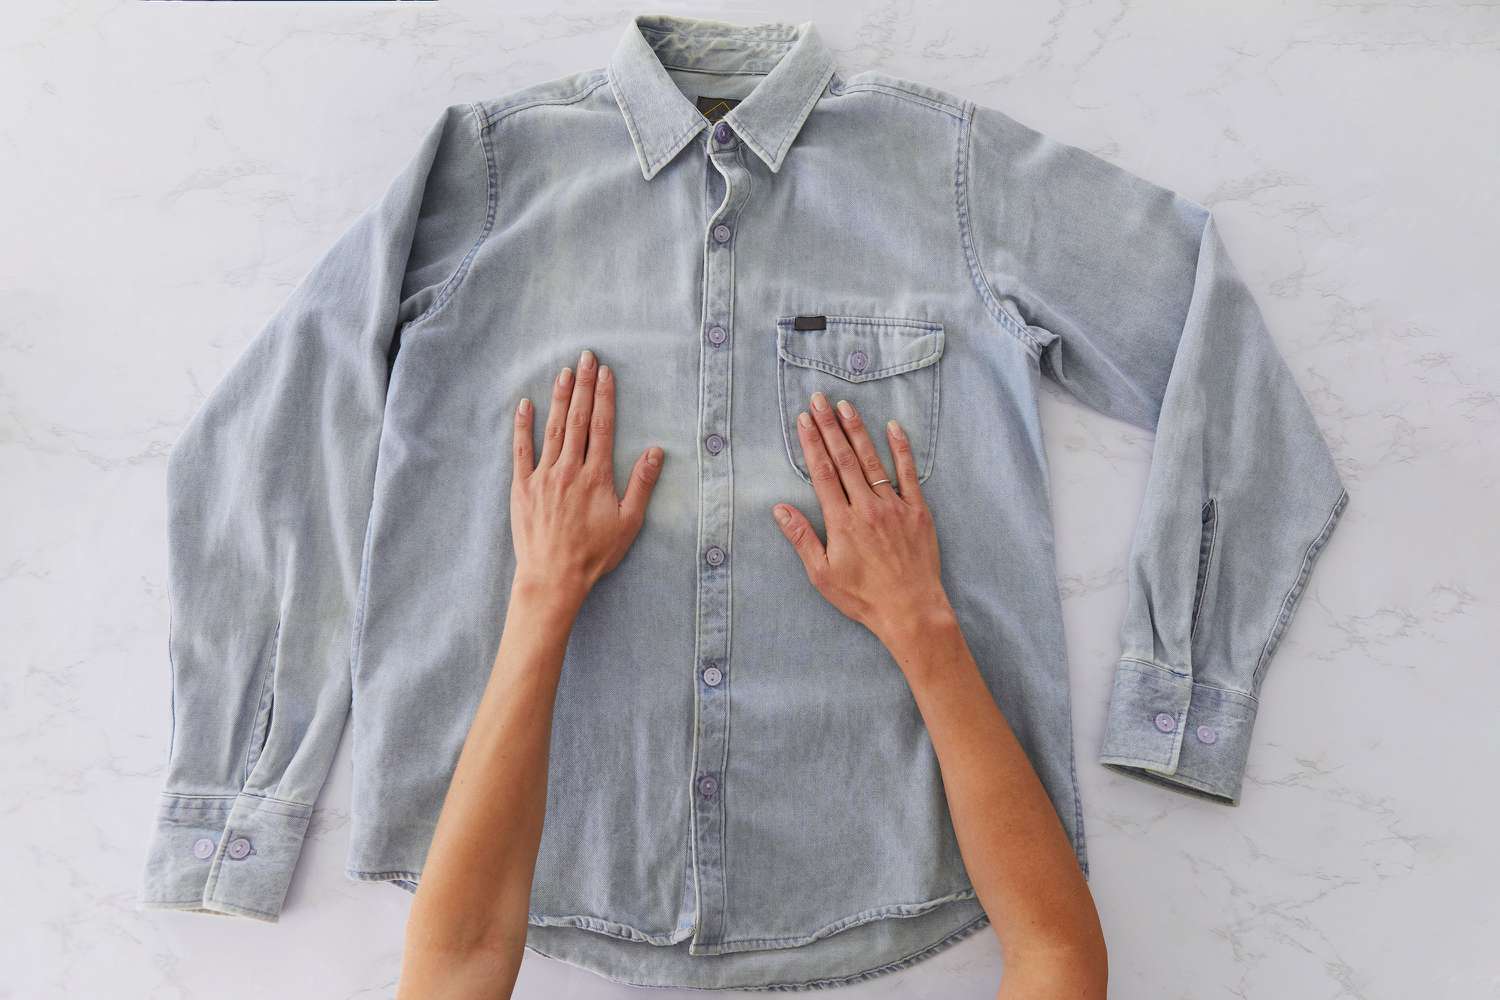 Camisa abotonada de jean gris claro puesta de frente